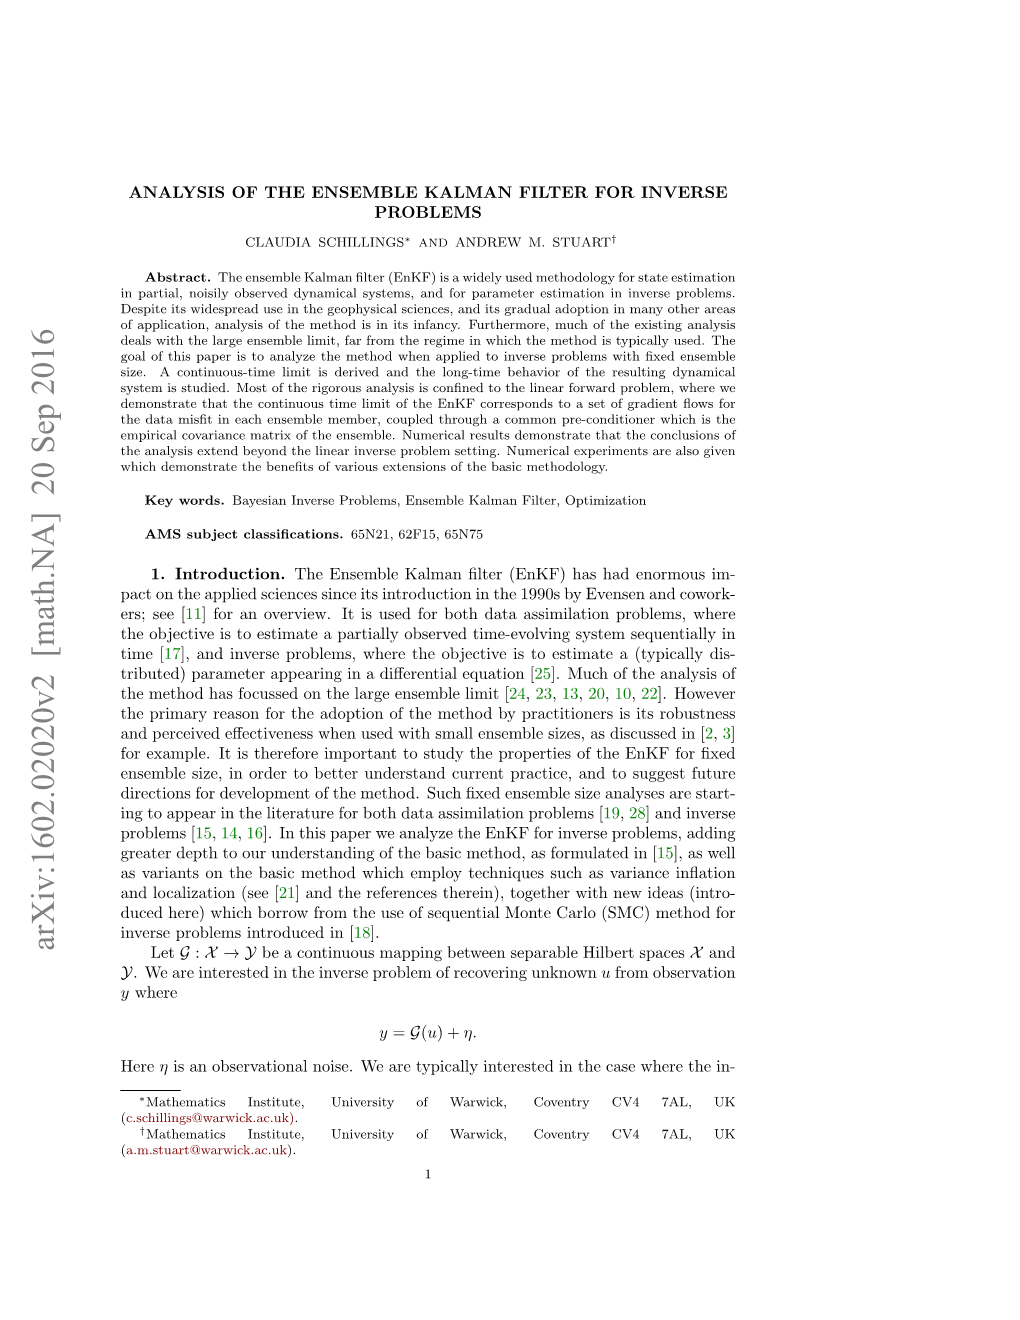 Analysis of the Ensemble Kalman Filter for Inverse Problems